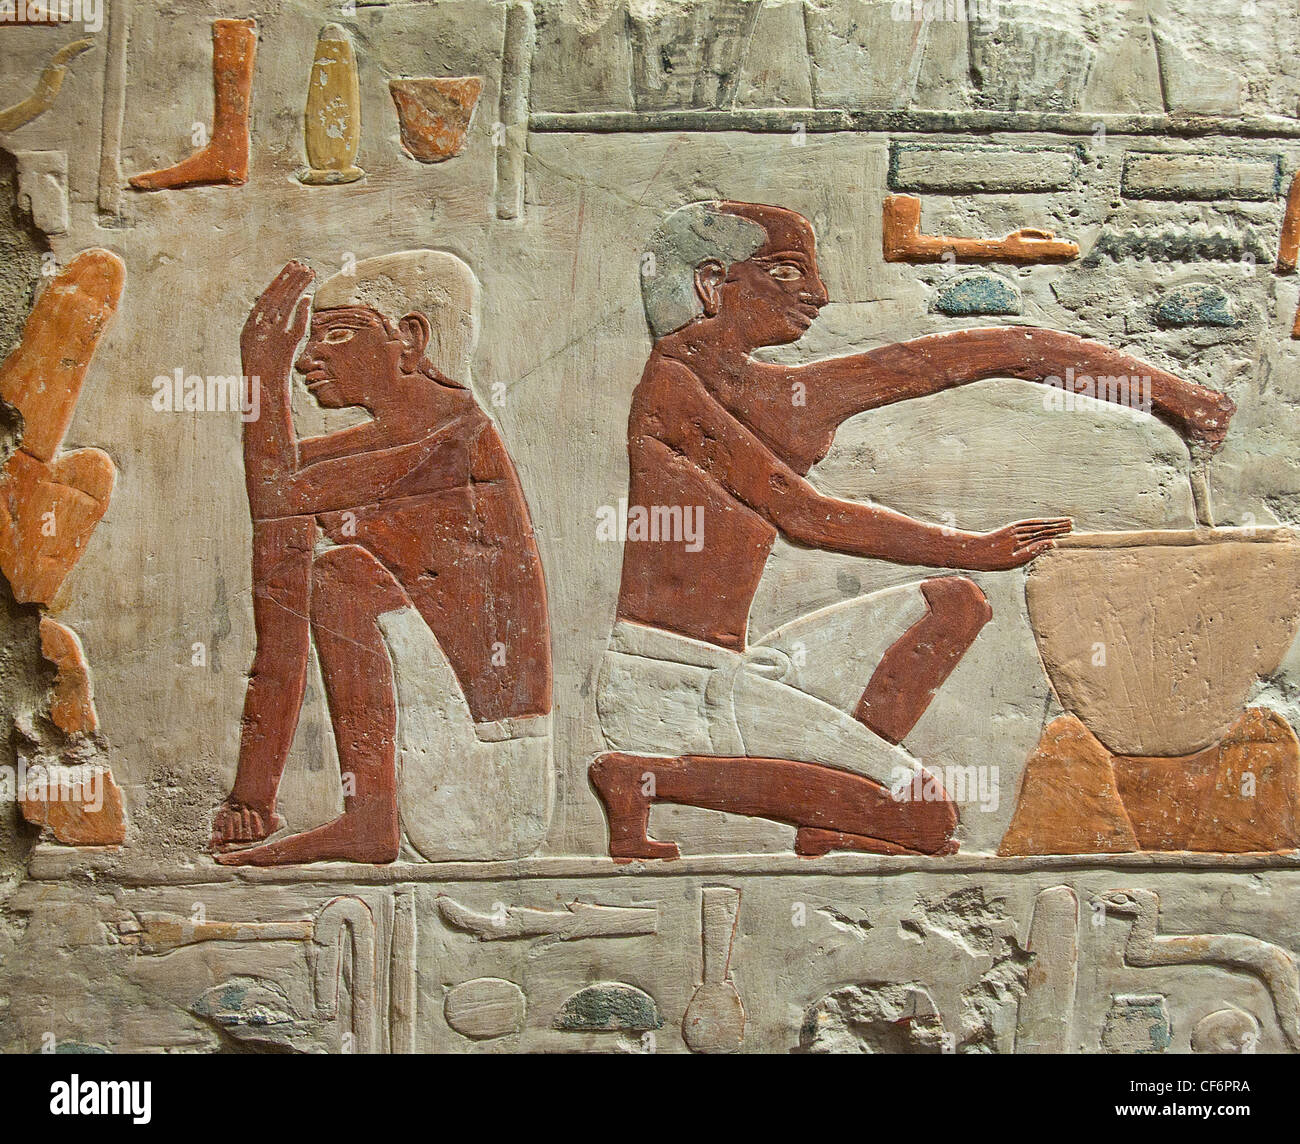 Fabricación de panadería y hornear pan 5 Dynasty 2500-2350 BC Egipto jeroglífico egipcio Foto de stock